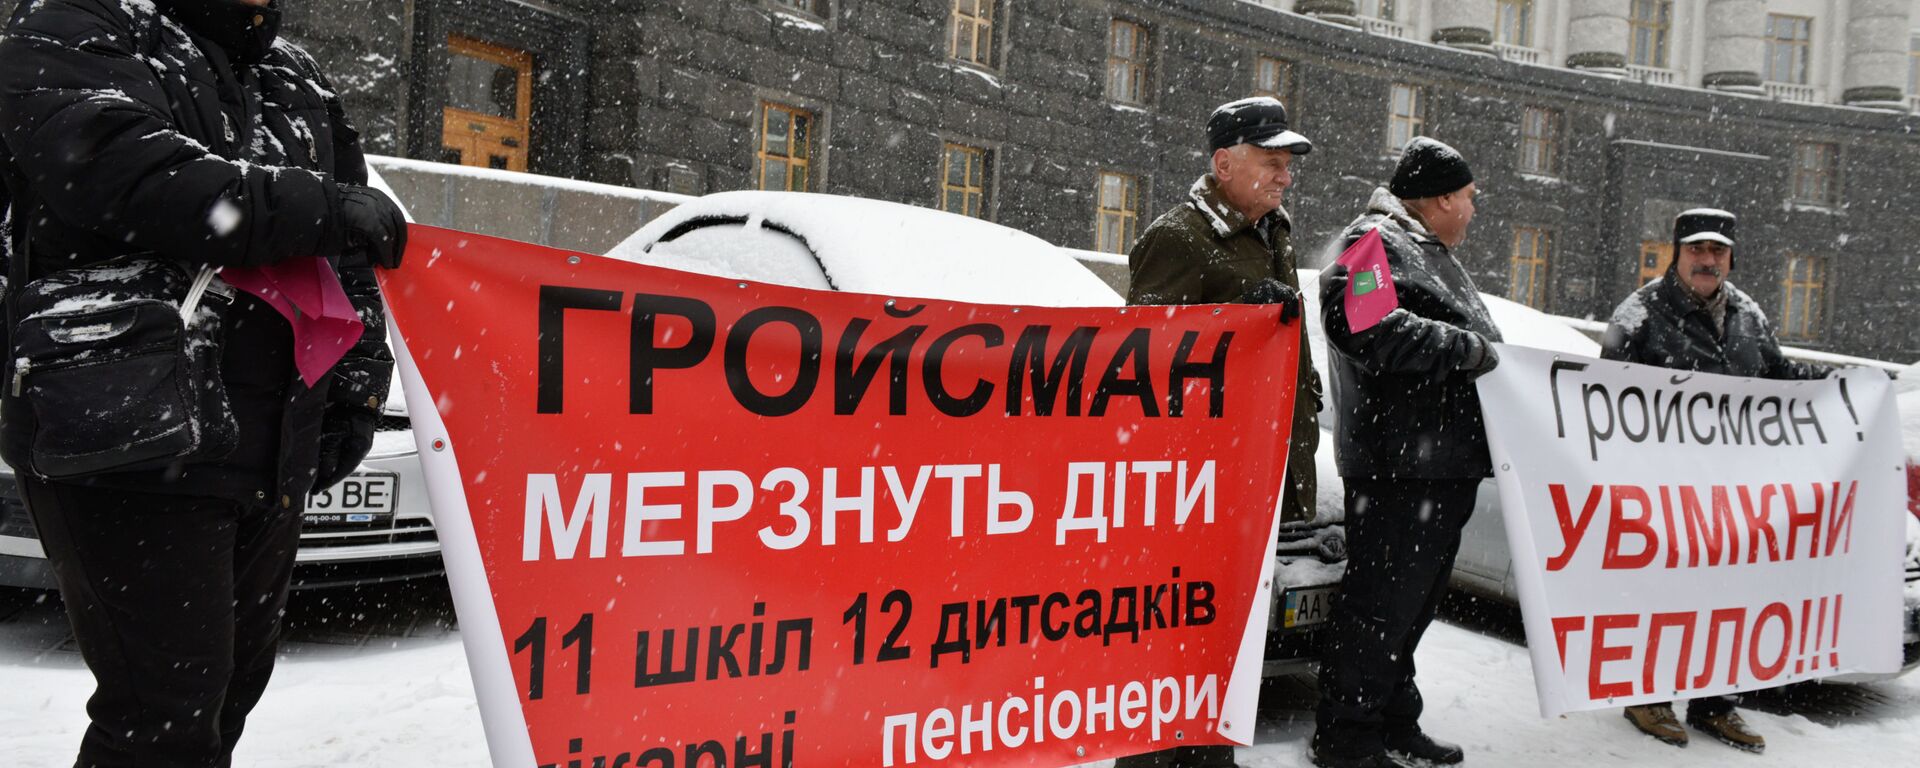 Жители Украины проводят пикет около здания кабинета министров в Киеве с требованием включить отопление в городах страны - Sputnik Латвия, 1920, 21.01.2021